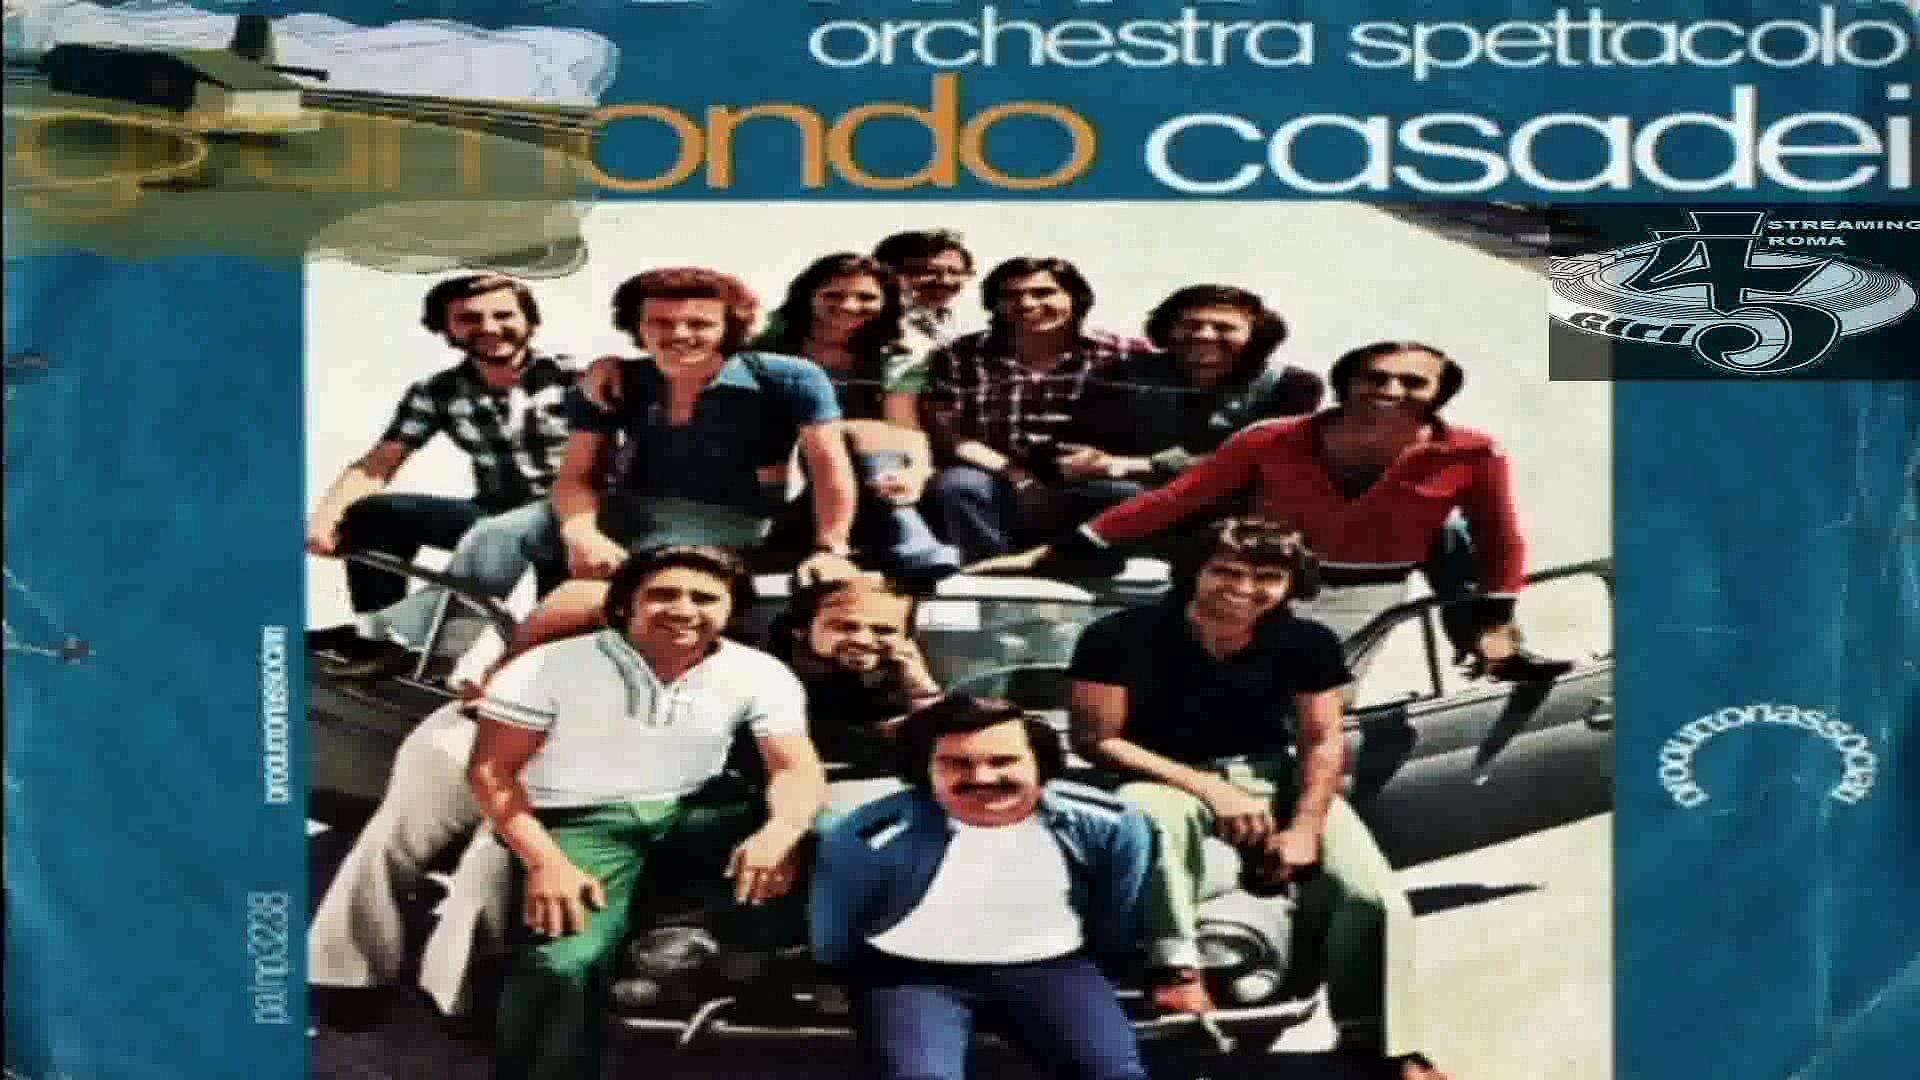 Giramondo/La Ballata Del Camionista Orchestra Spettacolo Casadei 1975  (Facciate:2) - Video Dailymotion